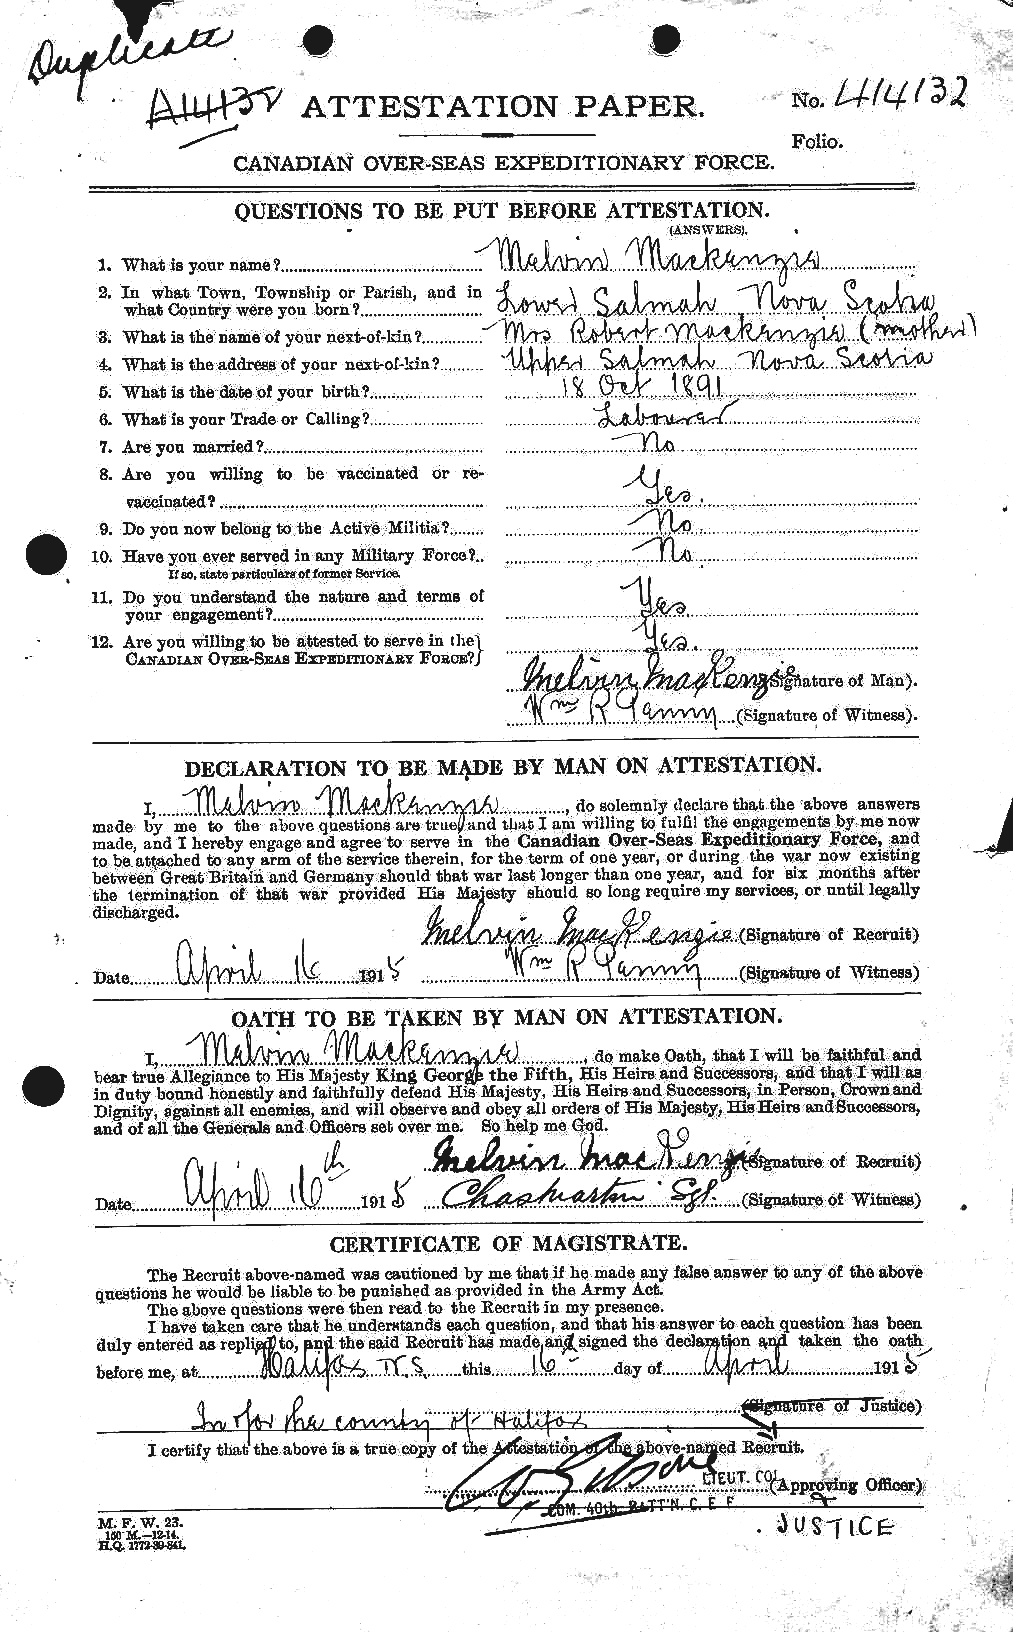 Dossiers du Personnel de la Première Guerre mondiale - CEC 529829a